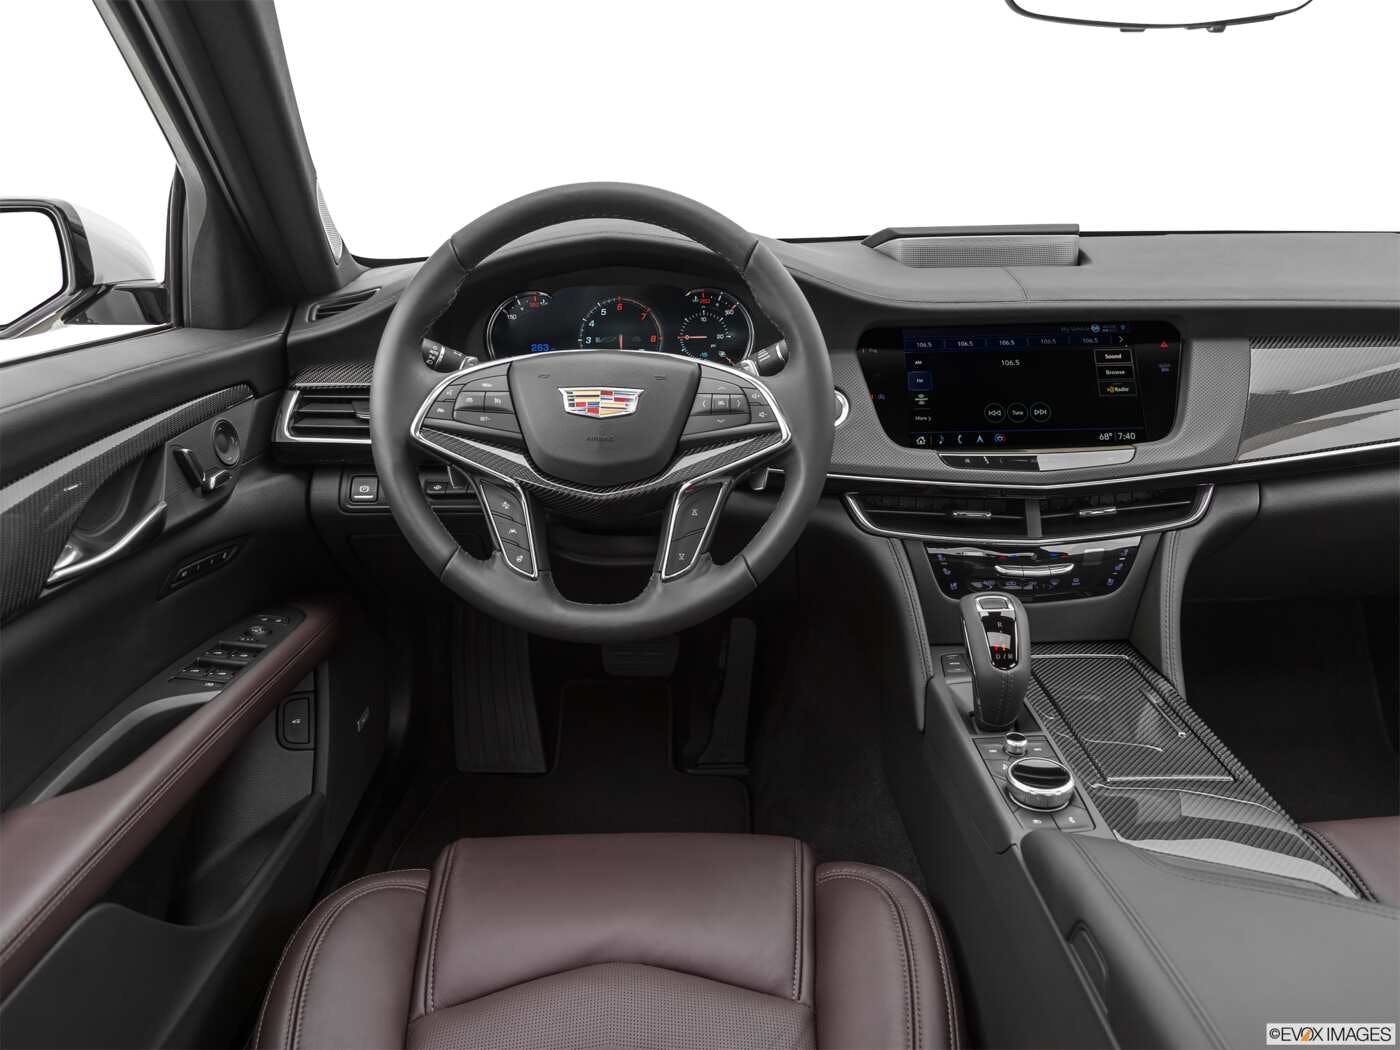 2020 Cadillac CT6-V Review | Pricing, Trims & Photos - TrueCar